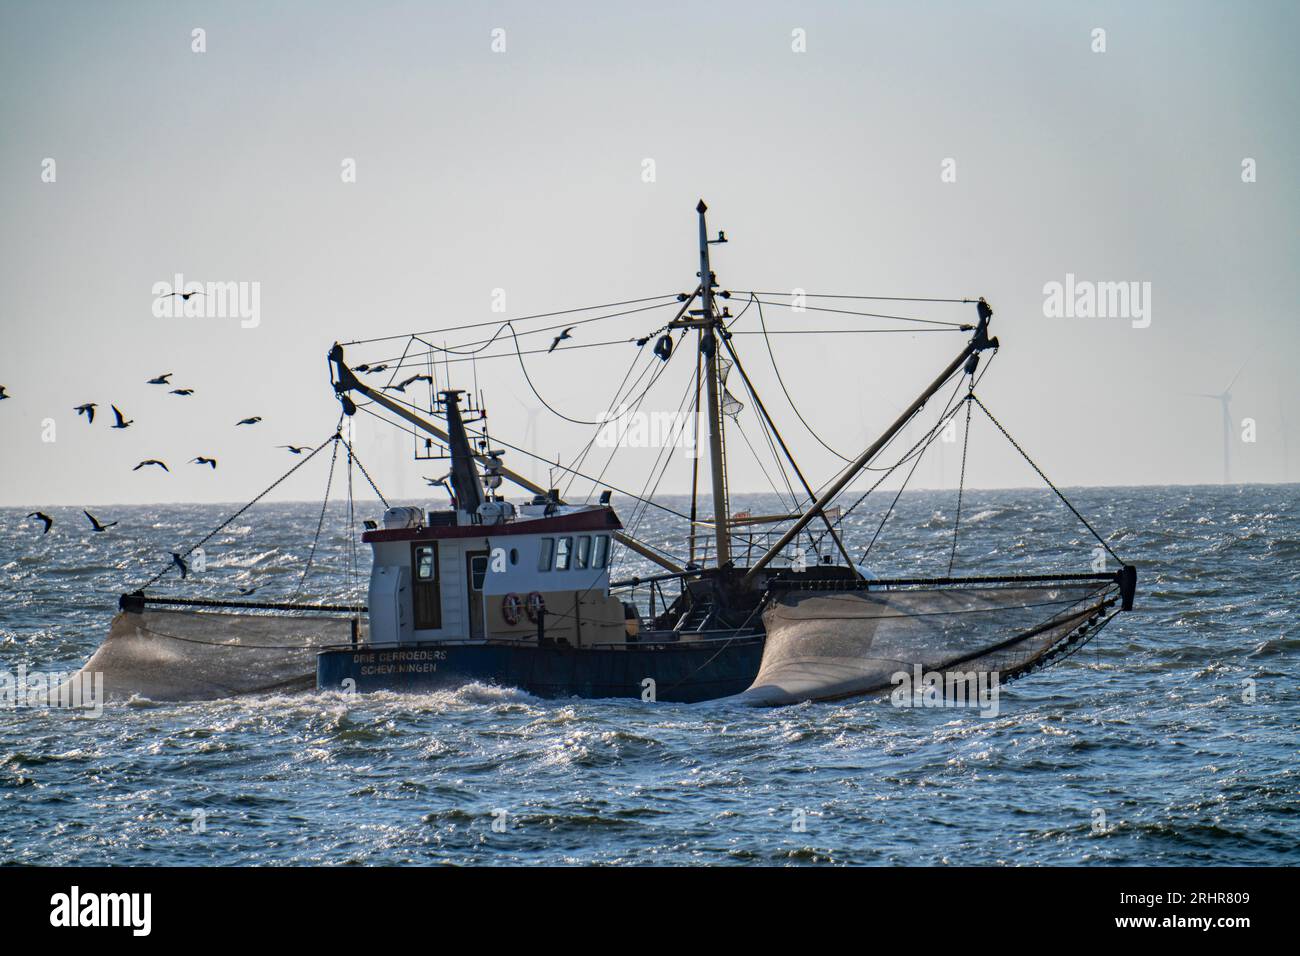 Krabbenschneider SCH-10 Drie Gebroeders, vor der Küste von Scheveningen, den Haag, mit Streunetzen, Segelboot, Niederlande Stockfoto